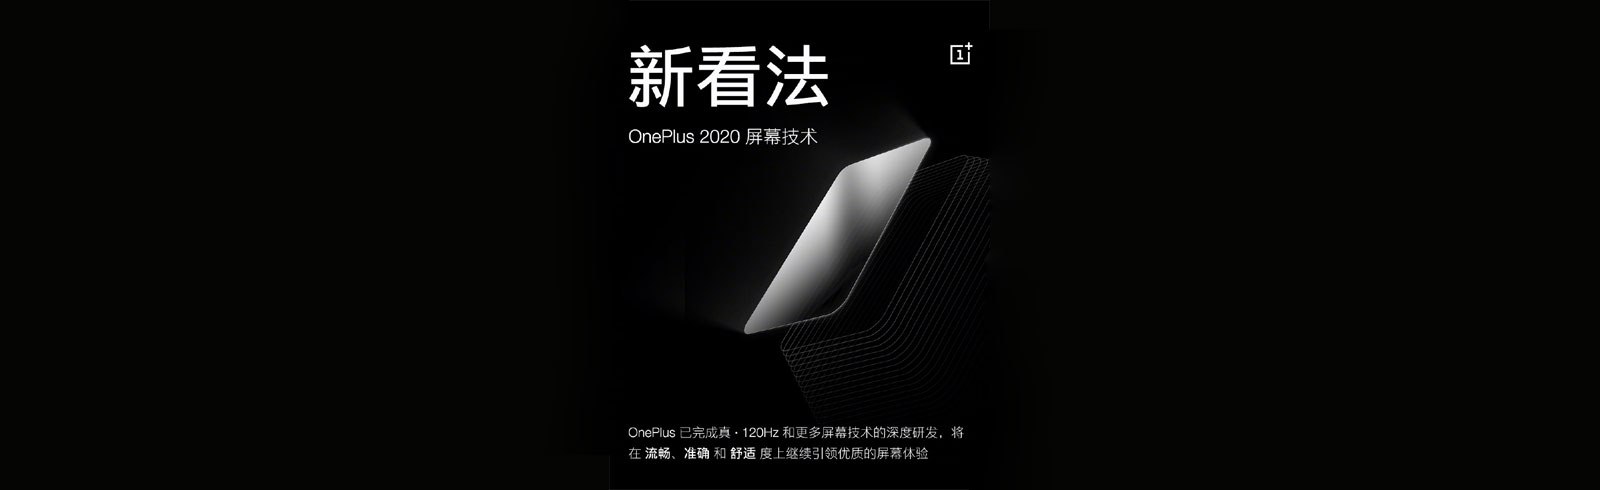 OnePlus 8 Pro sẽ có màn hình OLED 2K với tốc độ làm mới 120Hz, màu 10 bit, MEMC